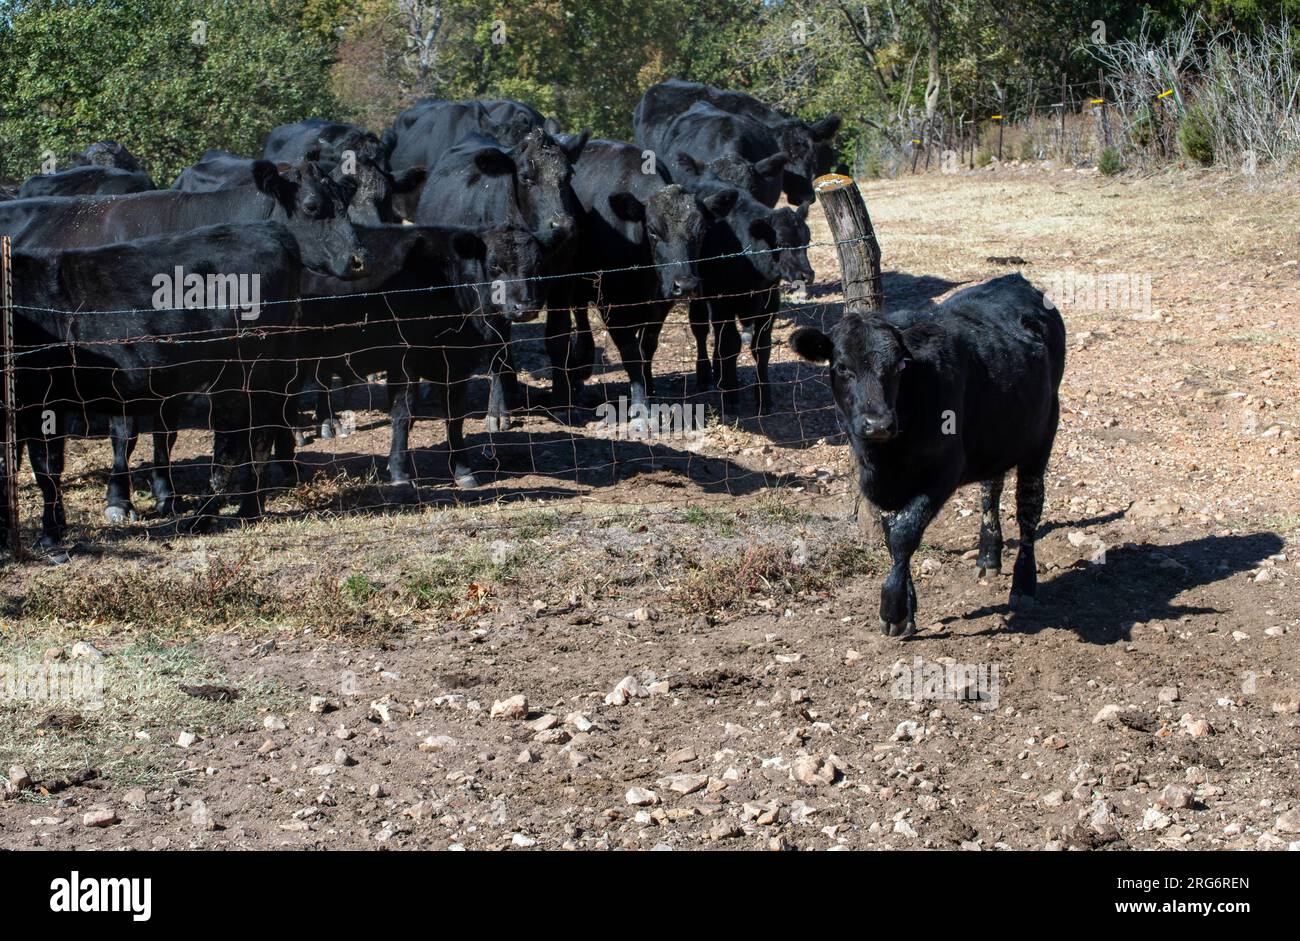 La manada de vacas observa como uno de los terneros más jóvenes parece estar liderando. Foto de stock